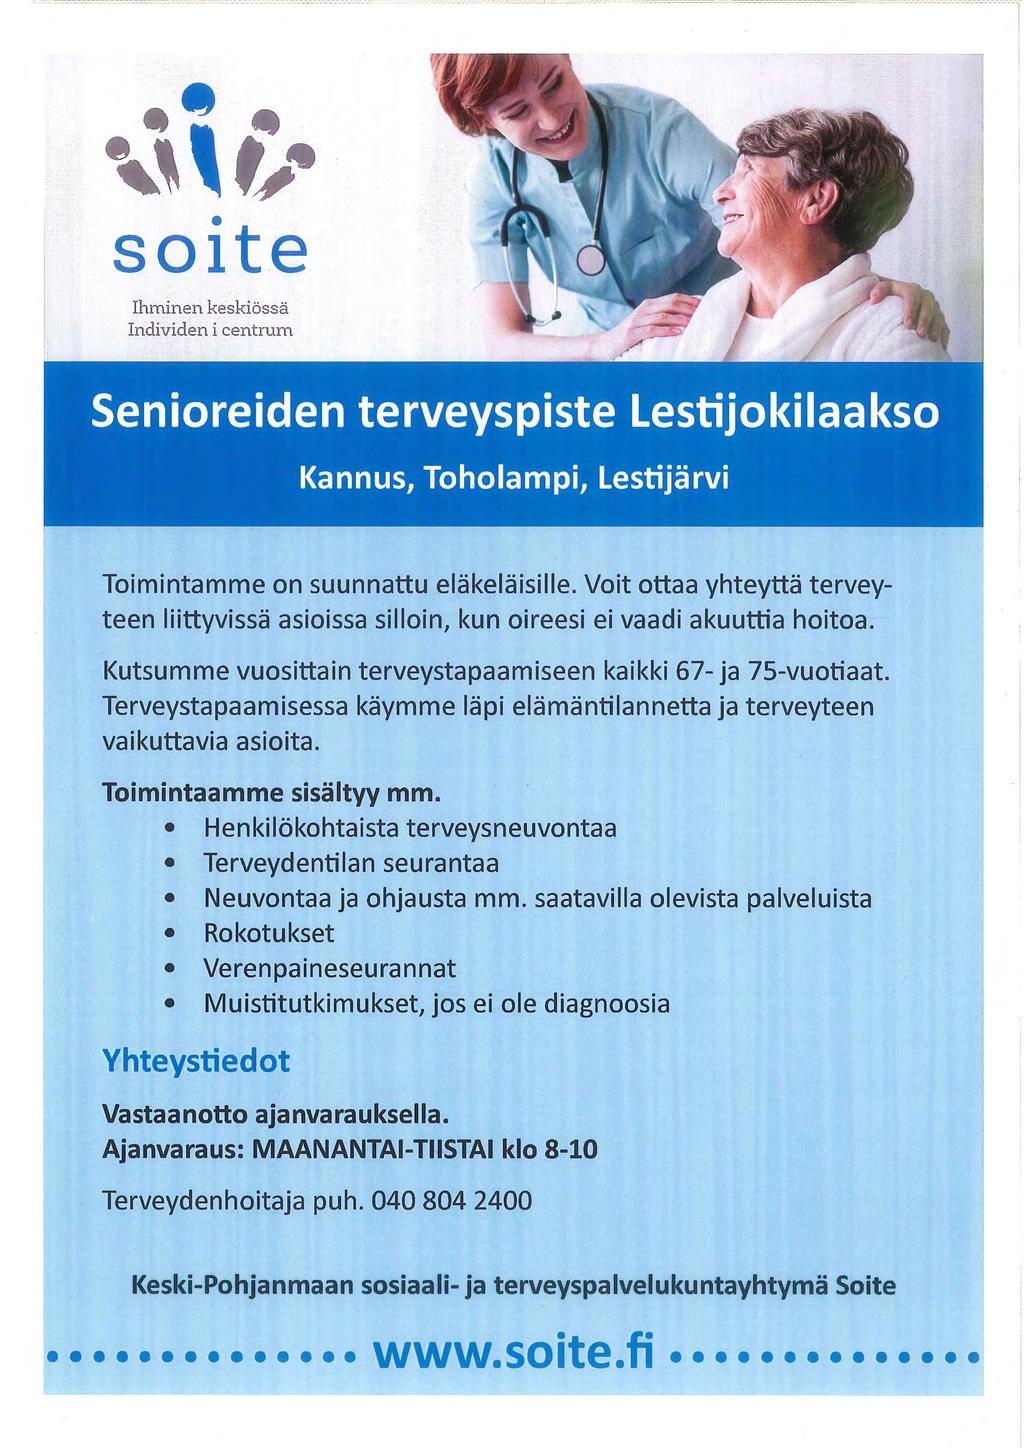 4" 40 %k tie soite Ihminen keskiössä Individen i centrum Senioreiden terveyspiste Lestijokilaakso Kannus, Toholampi, Lestijärvi Toimintamme on suunnattu eläkeläisille.